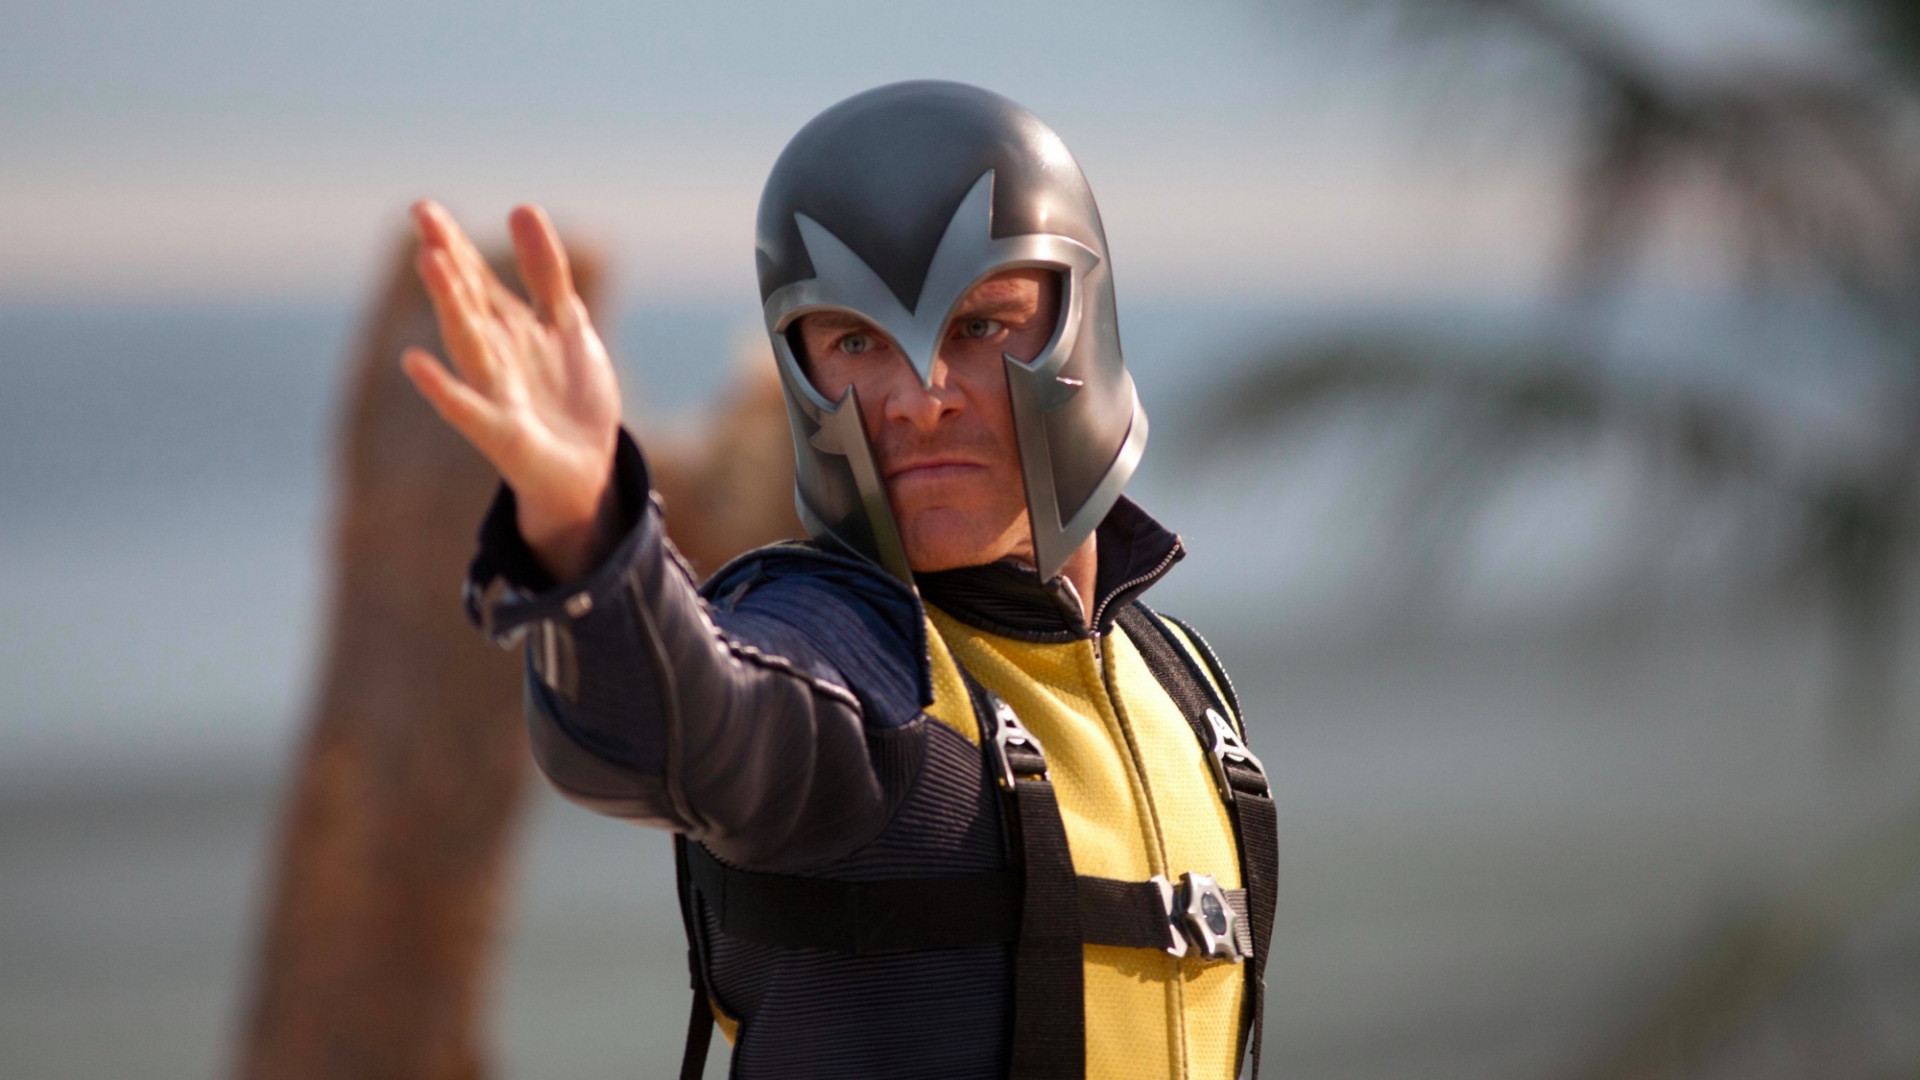 Film X-Men : Le Commencement Fond d'écran HD | Image